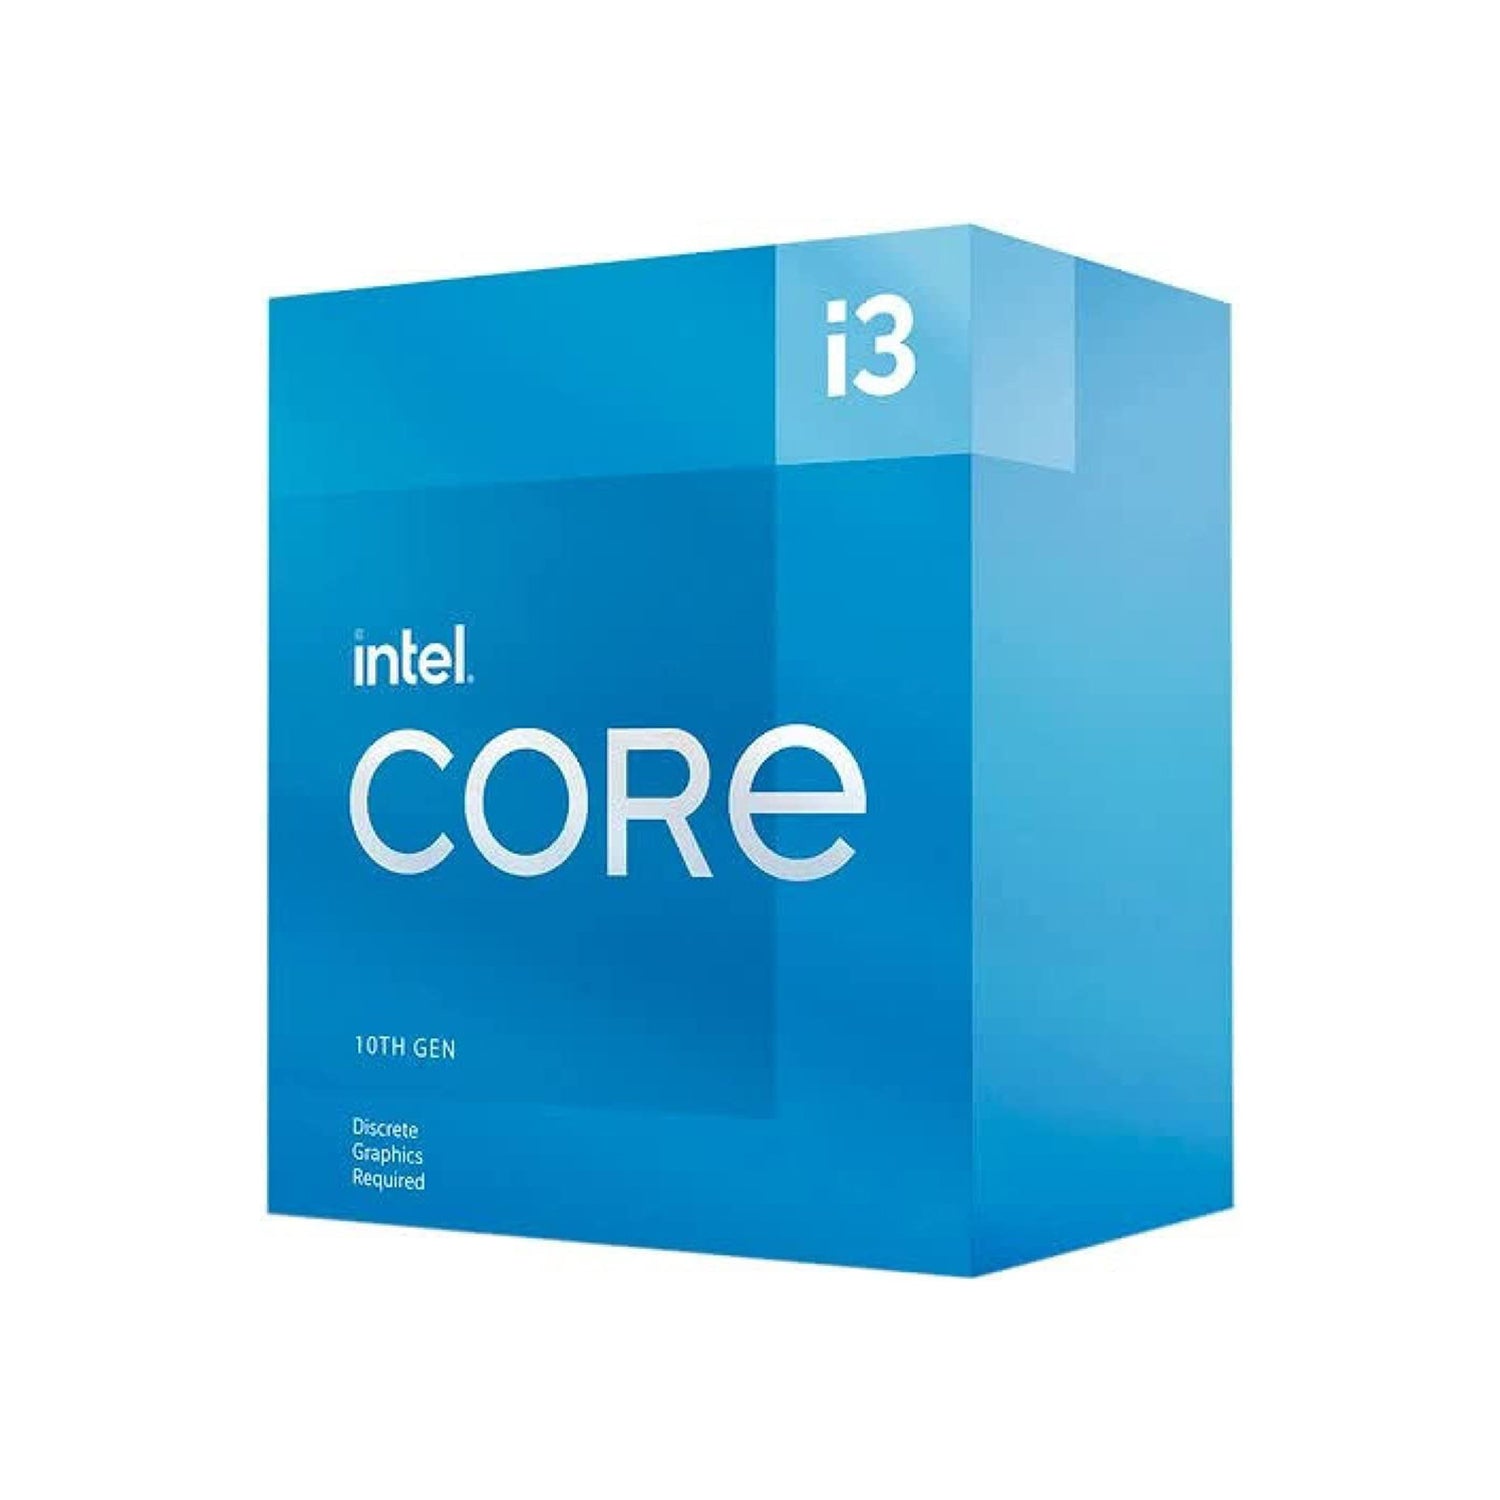 Intel Core i3-10105F - Core i3 10th Gen Comet Lake Quad-Core Processor (6M Cache, up to 4.40 GHz) LGA 1200 65W Desktop Processor